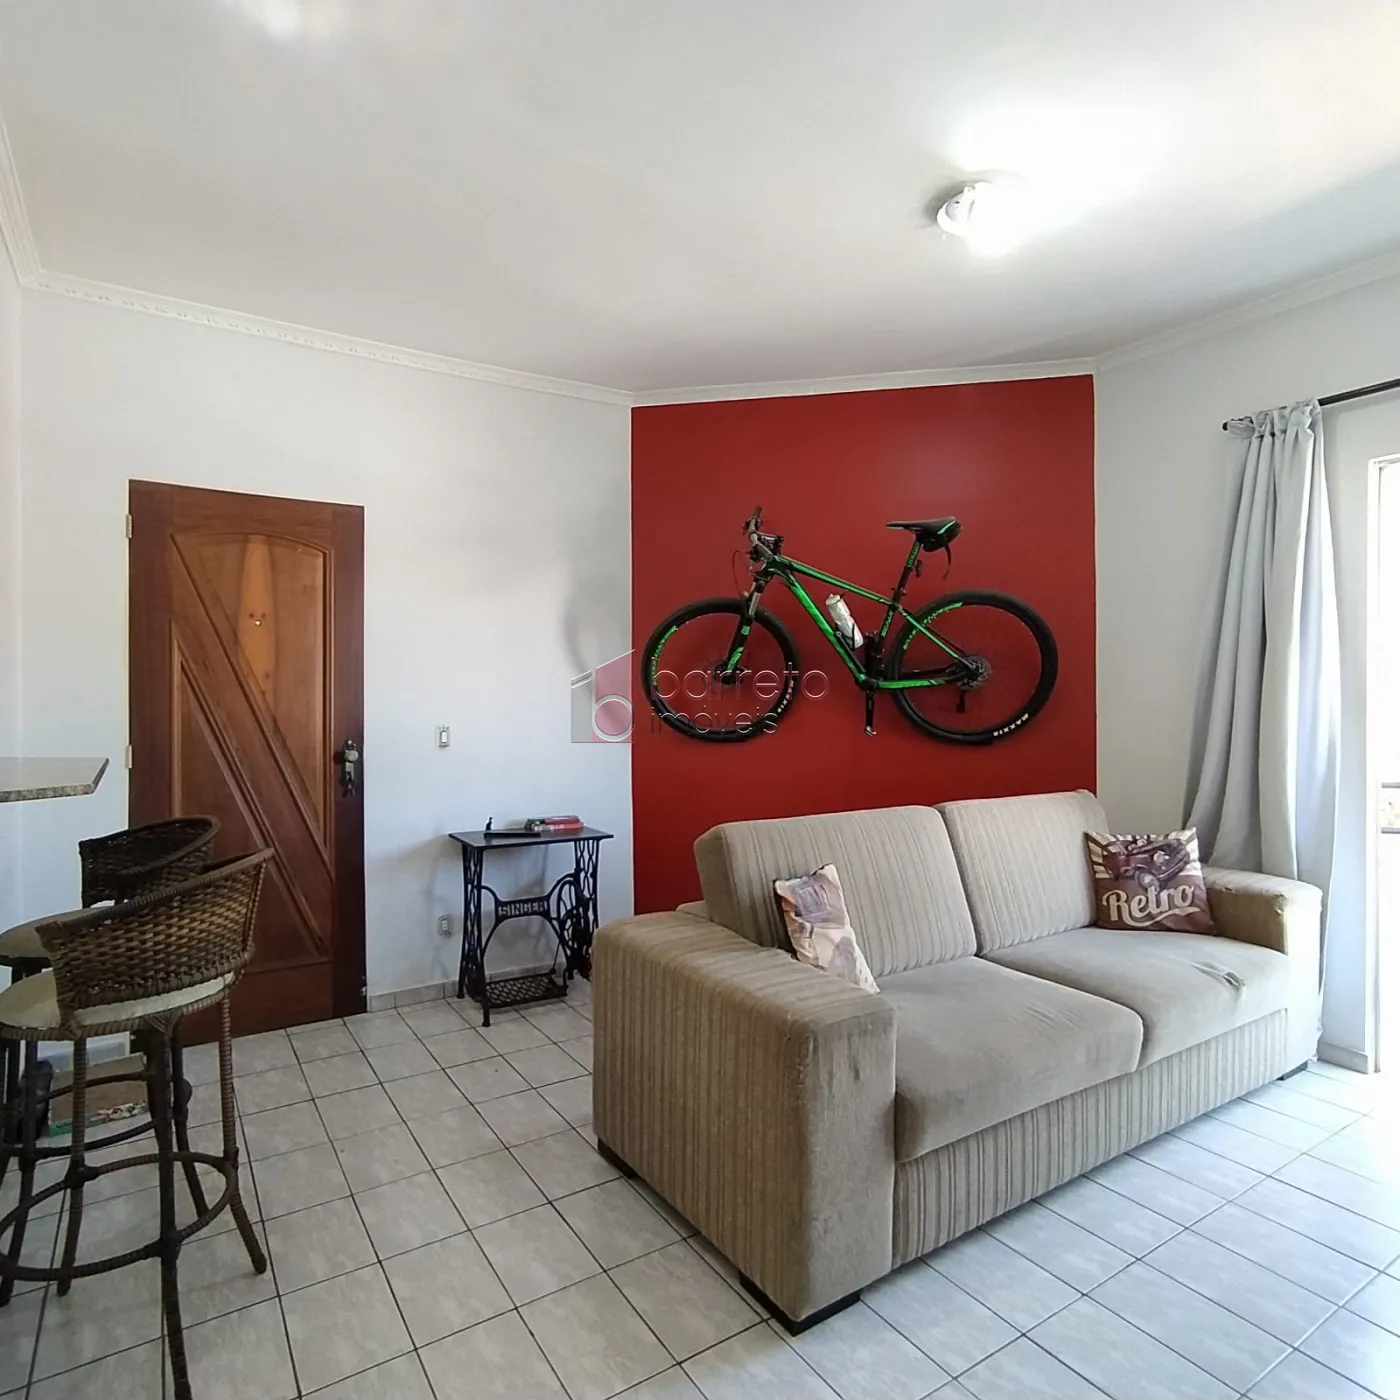 Comprar Apartamento / Padrão em Jundiaí R$ 330.000,00 - Foto 2